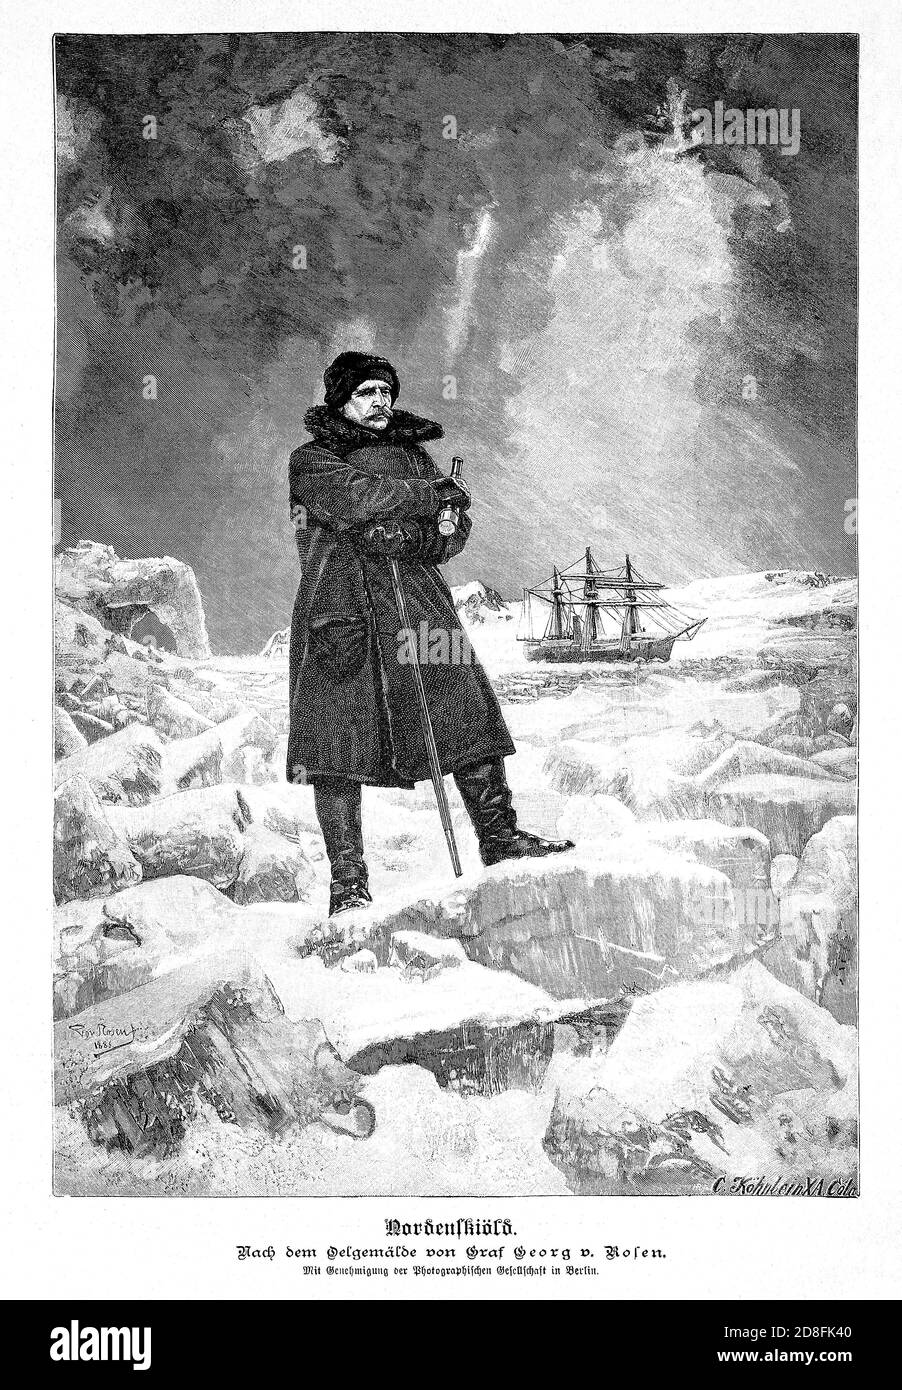 1888, SWEDEN : The swedish Arctic explorer , geologist , mineralogist Baron ADOLF ERIK Von NORDENSKIOLD ( Freiherr Nordenskiöld , 1832 - 1901 ). Portrait by  engraver C. Kohnlein from the original 1886 portrait by Graf GEORG Von ROSEN ( 1843 - 1923 ), pubblished in Germany on illustrated Leipzig magazine '  Die Gartenlaube ' ( The Garden Arbor ) in 1888 . - SVEZIA - FINLANDIA - FINLAND - Finnish - ESPLORATION - EXPLORATIONS - ESPLORAZIONE ARTIDE - North Pole - POLO NORD - ESPLORATORE - MINERALOGY - MINERALOGIA - GEOLOGO - GEOLOGY - GEOLOGIA - ritratto - portrait - baffi - moustache - engraving Stock Photo